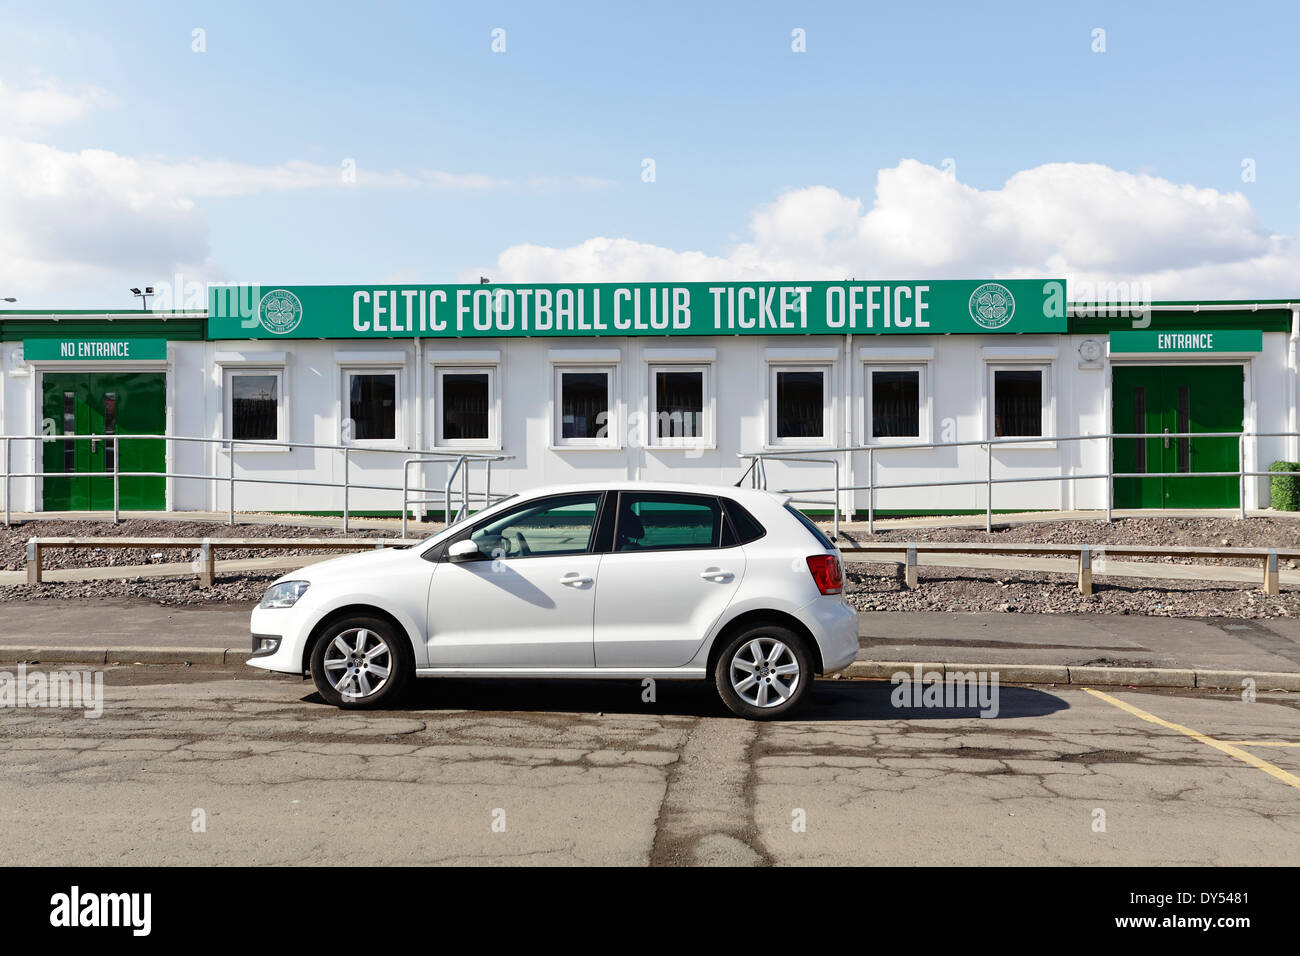 Le Celtic Football Club Le bureau de vente des billets, Glasgow, Écosse, Royaume-Uni Banque D'Images